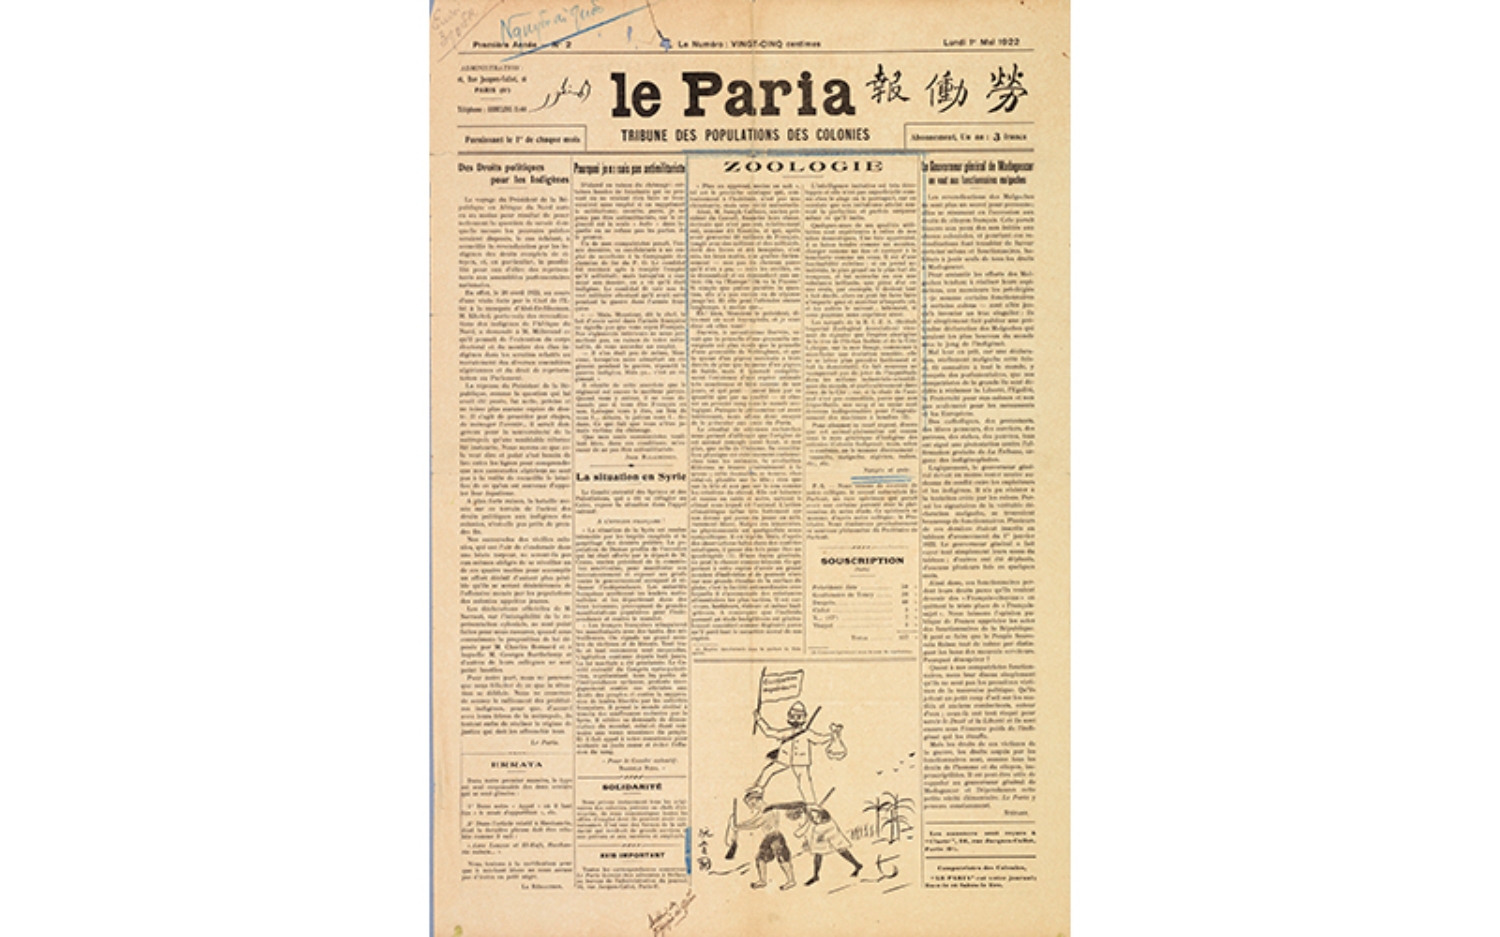 Báo Le Paria số 2 trang 1 ra ngày 1/5/1922 đăng bài của tác giả Nguyễn Ái Quốc. Tài liệu do Trung tâm lưu trữ Quốc gia Pháp tại Aix-en Provence (ANOM) cung cấp.